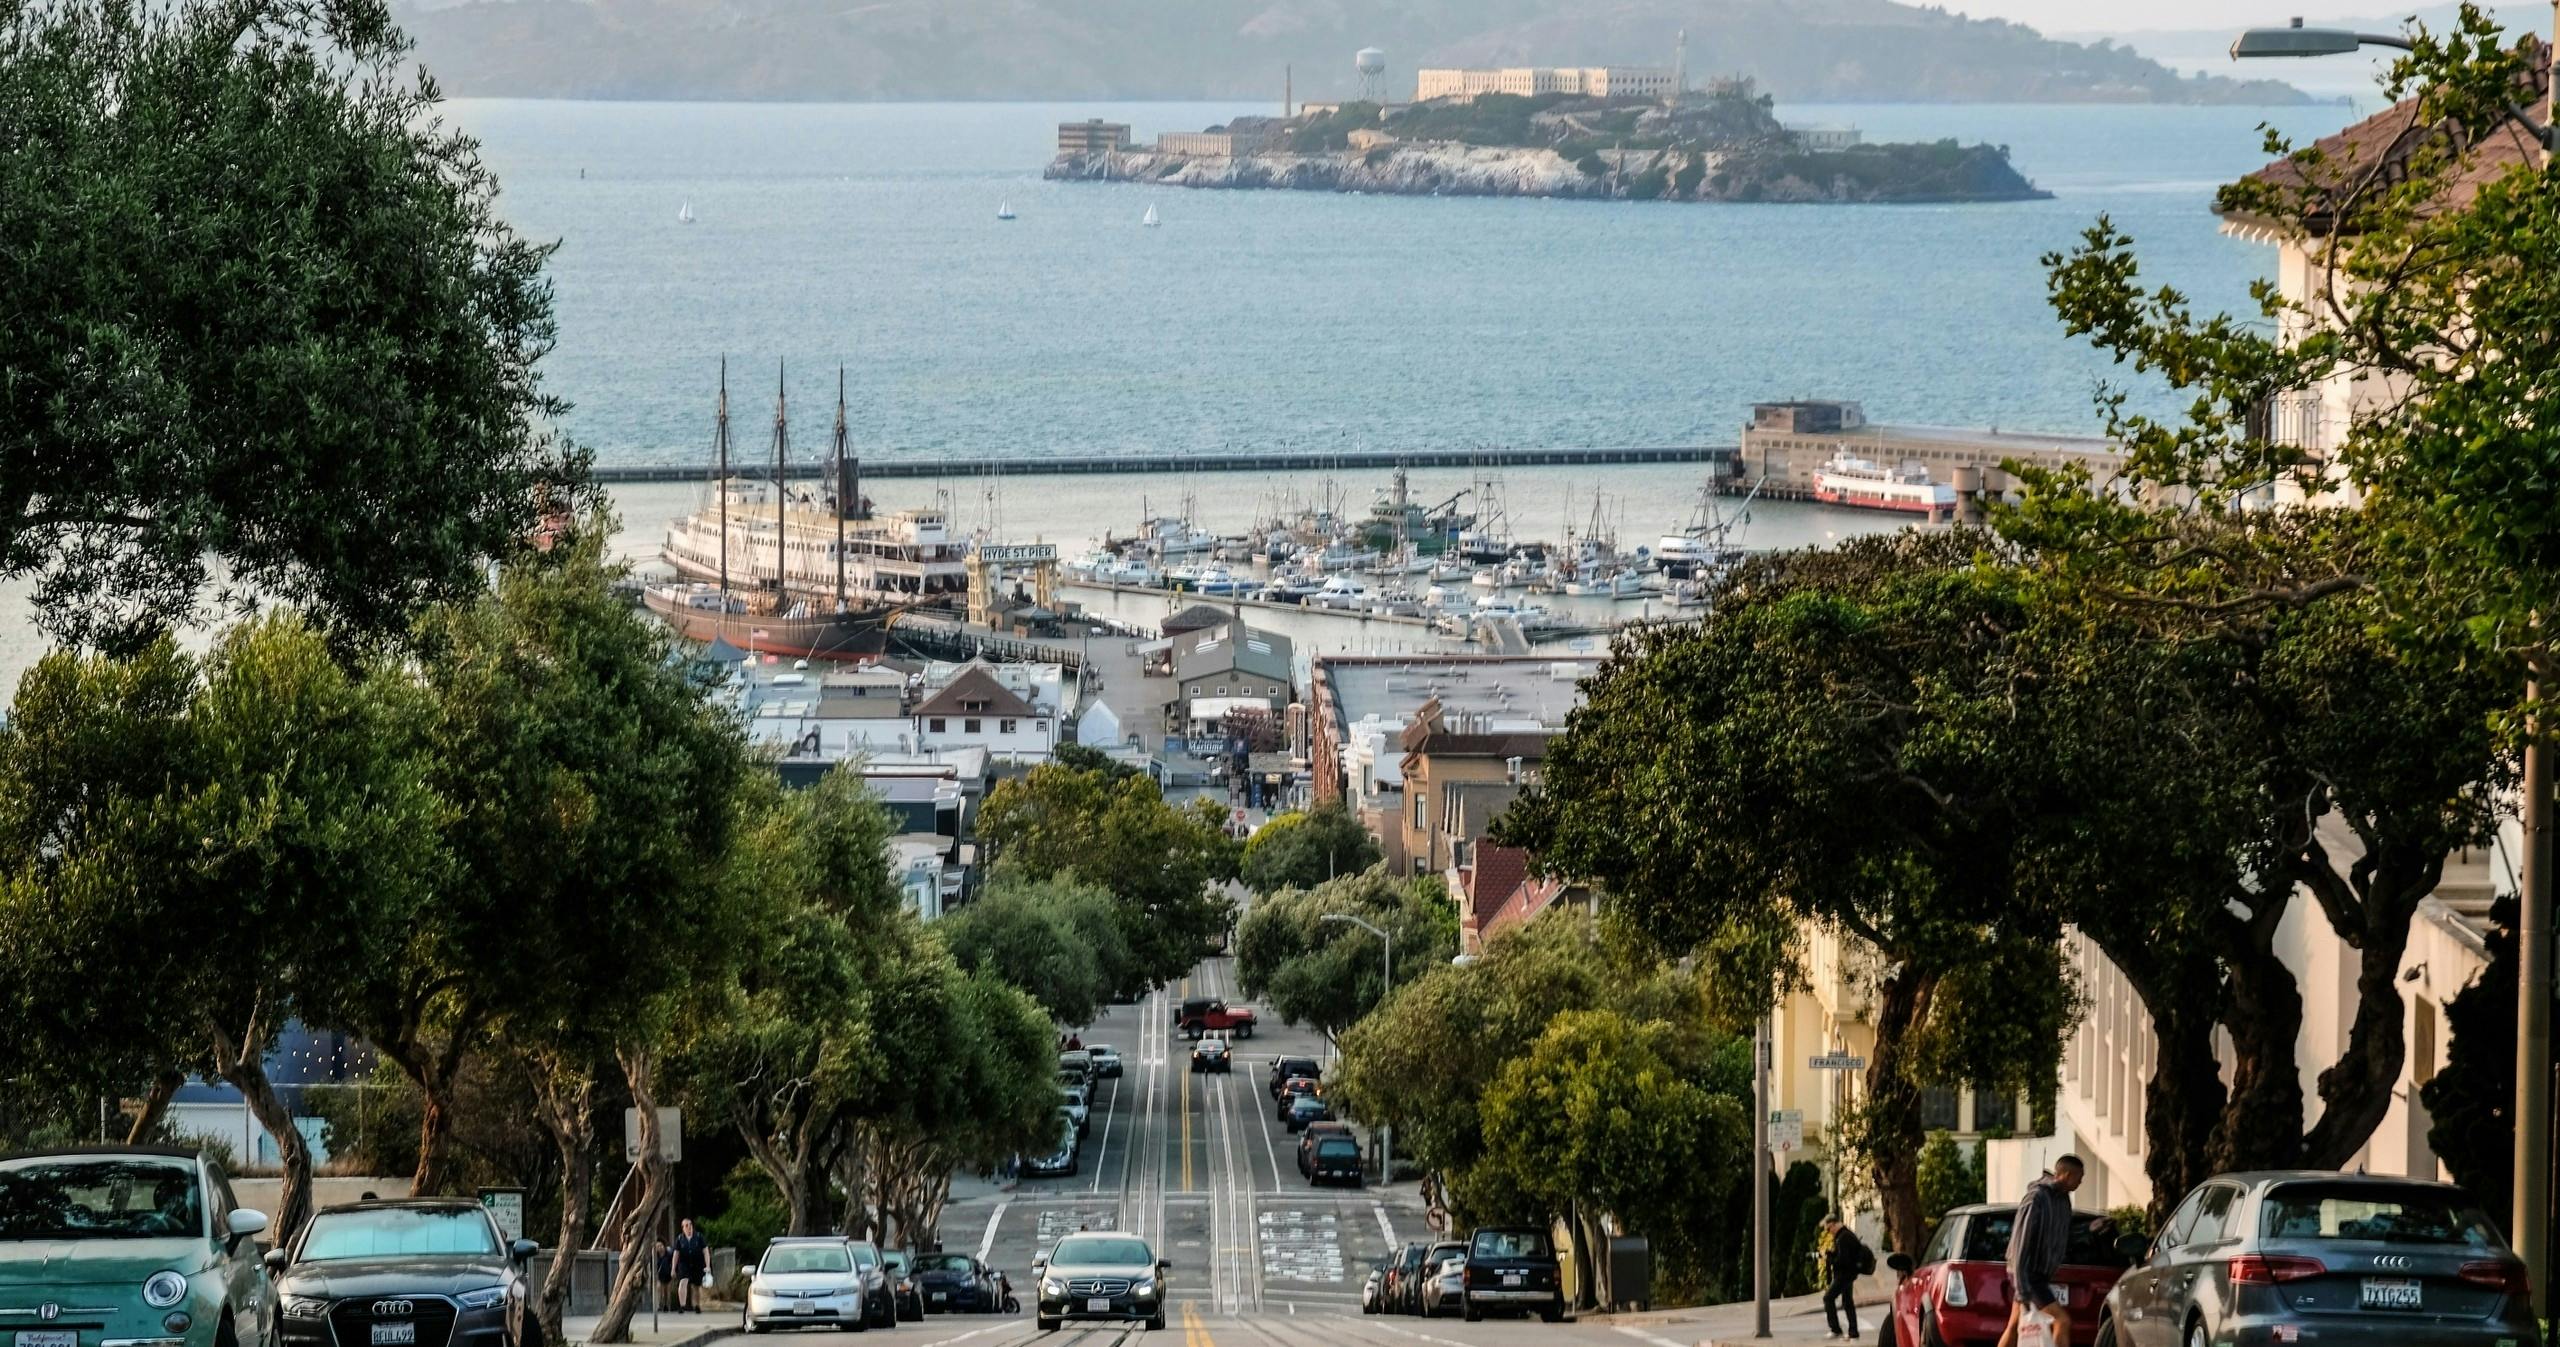 Visite de l'île d'Alcatraz combinée à une activité à Fisherman's Wharf